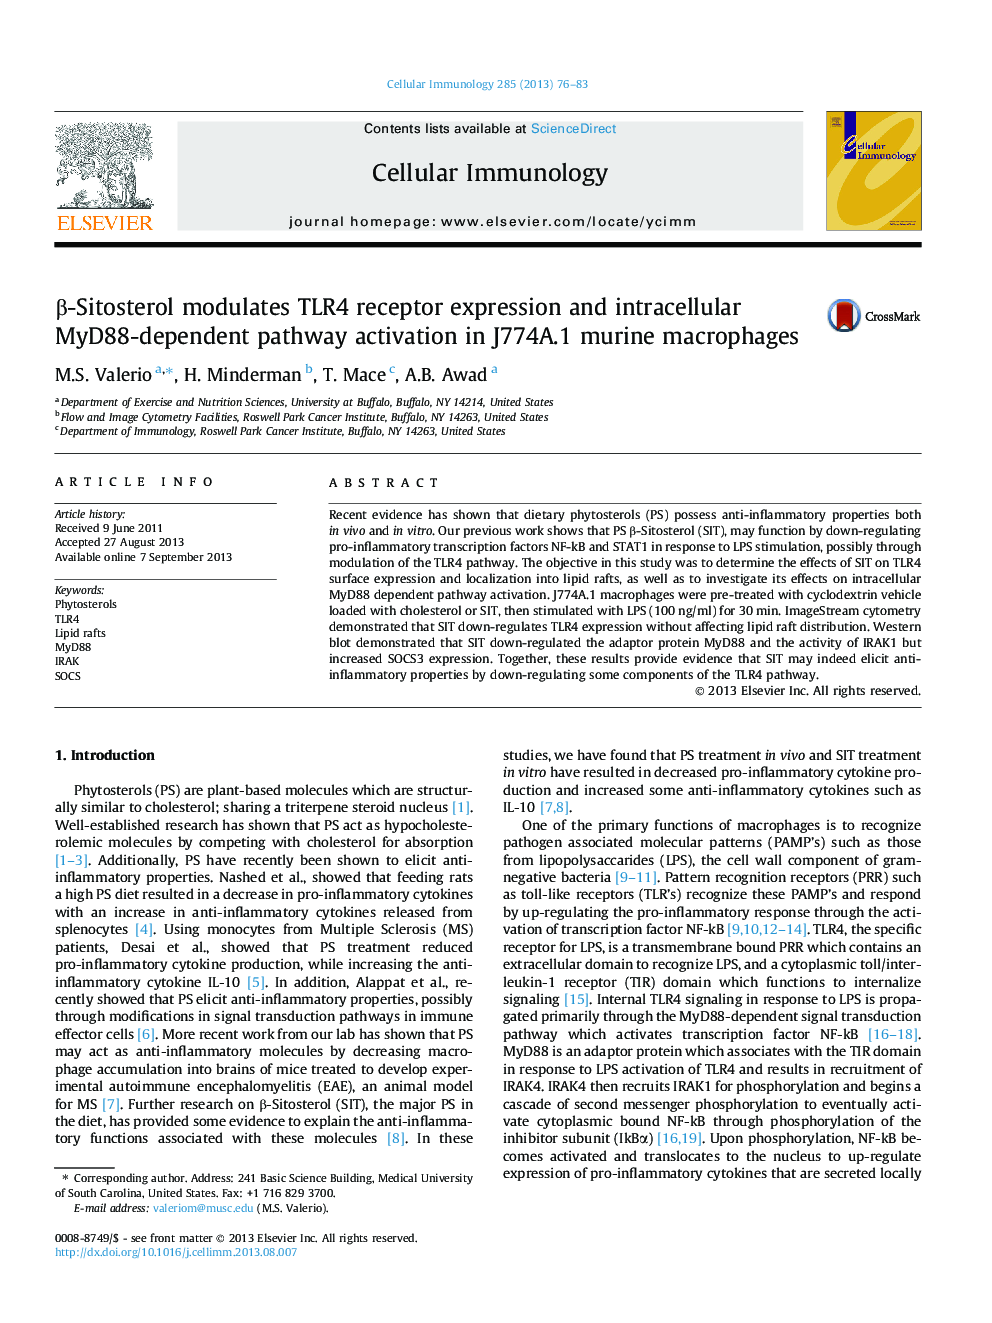 β-Sitosterol modulates TLR4 receptor expression and intracellular MyD88-dependent pathway activation in J774A.1 murine macrophages